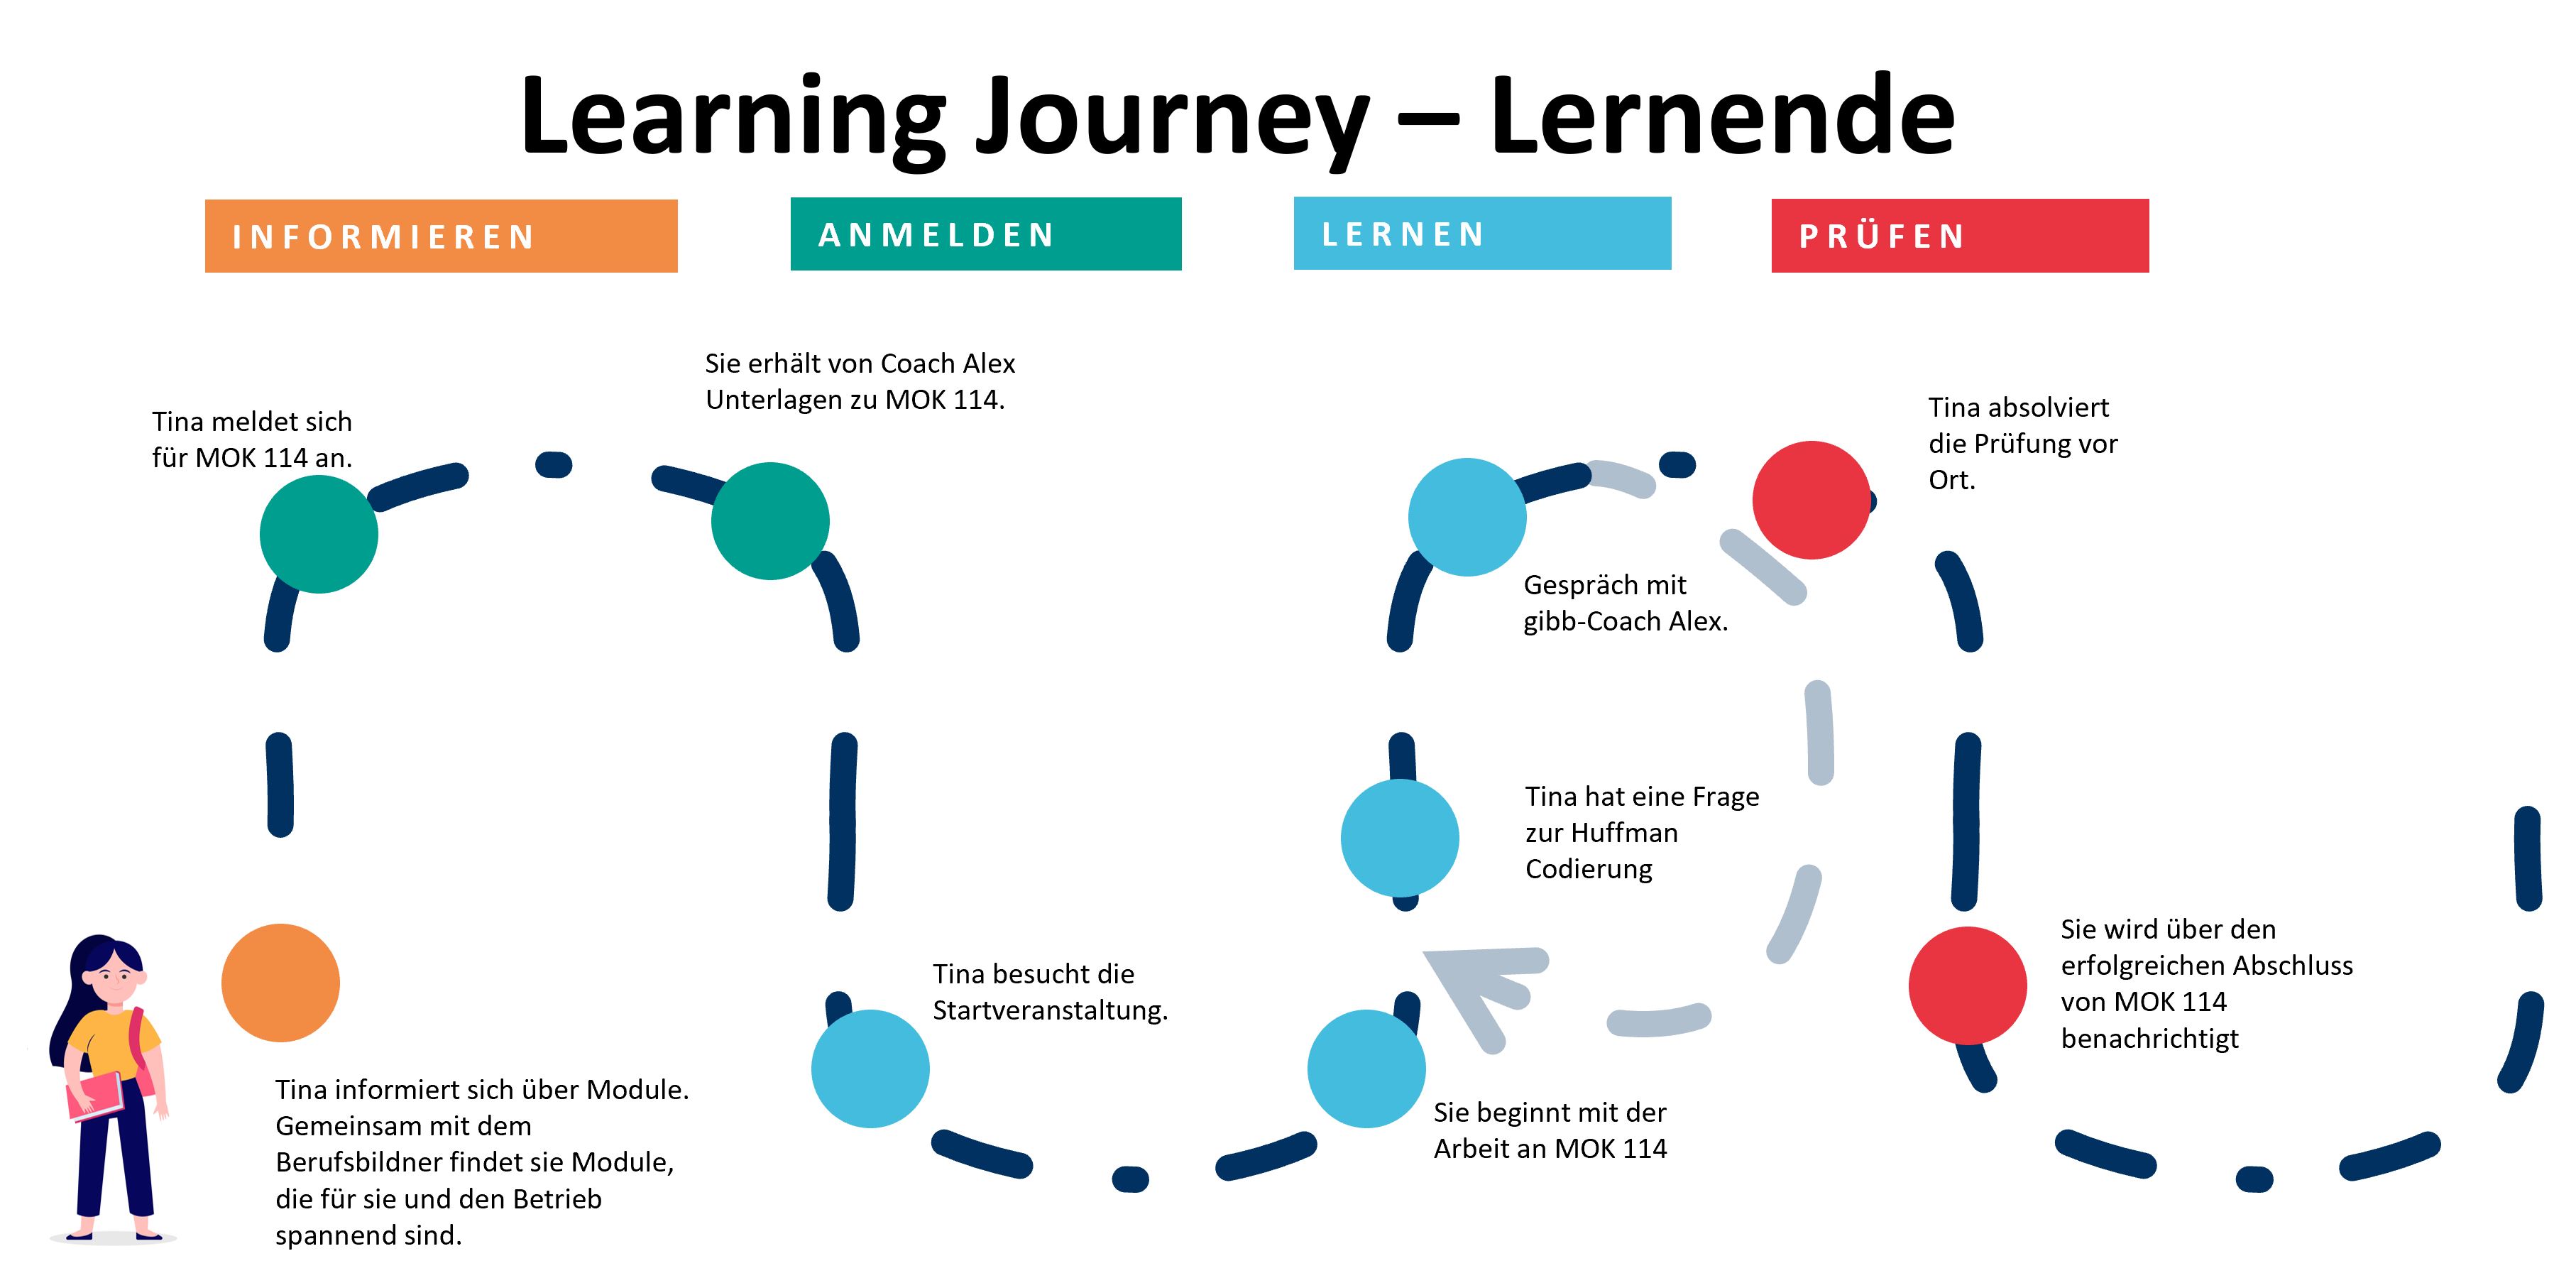 Learning Journey – Lernende